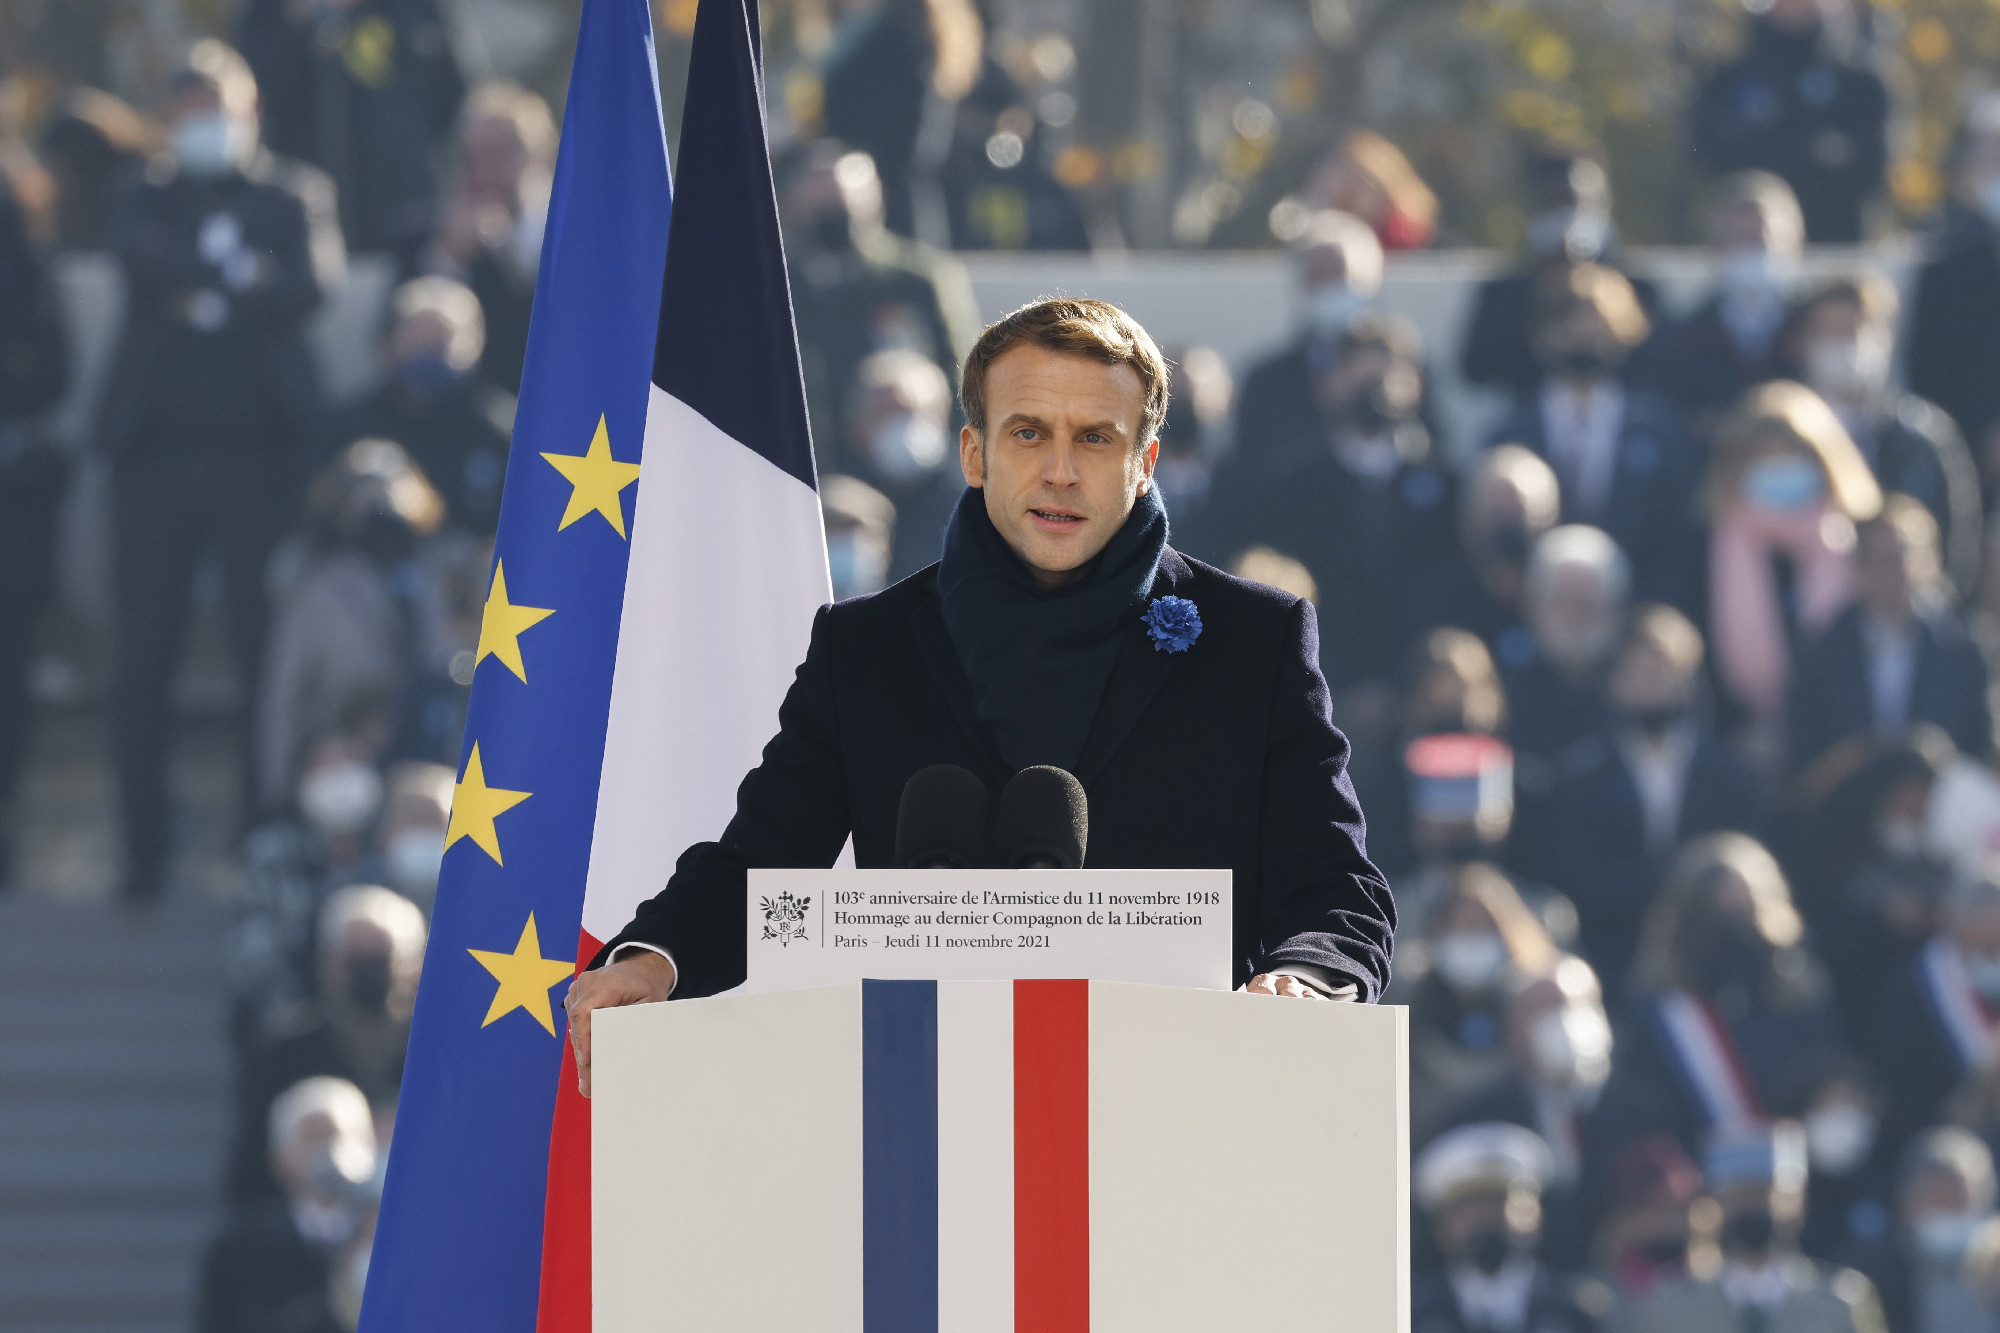 Elfogadta a francia nemzetgyűlés: három oltásra járna csak teljes értékű védettségi igazolás